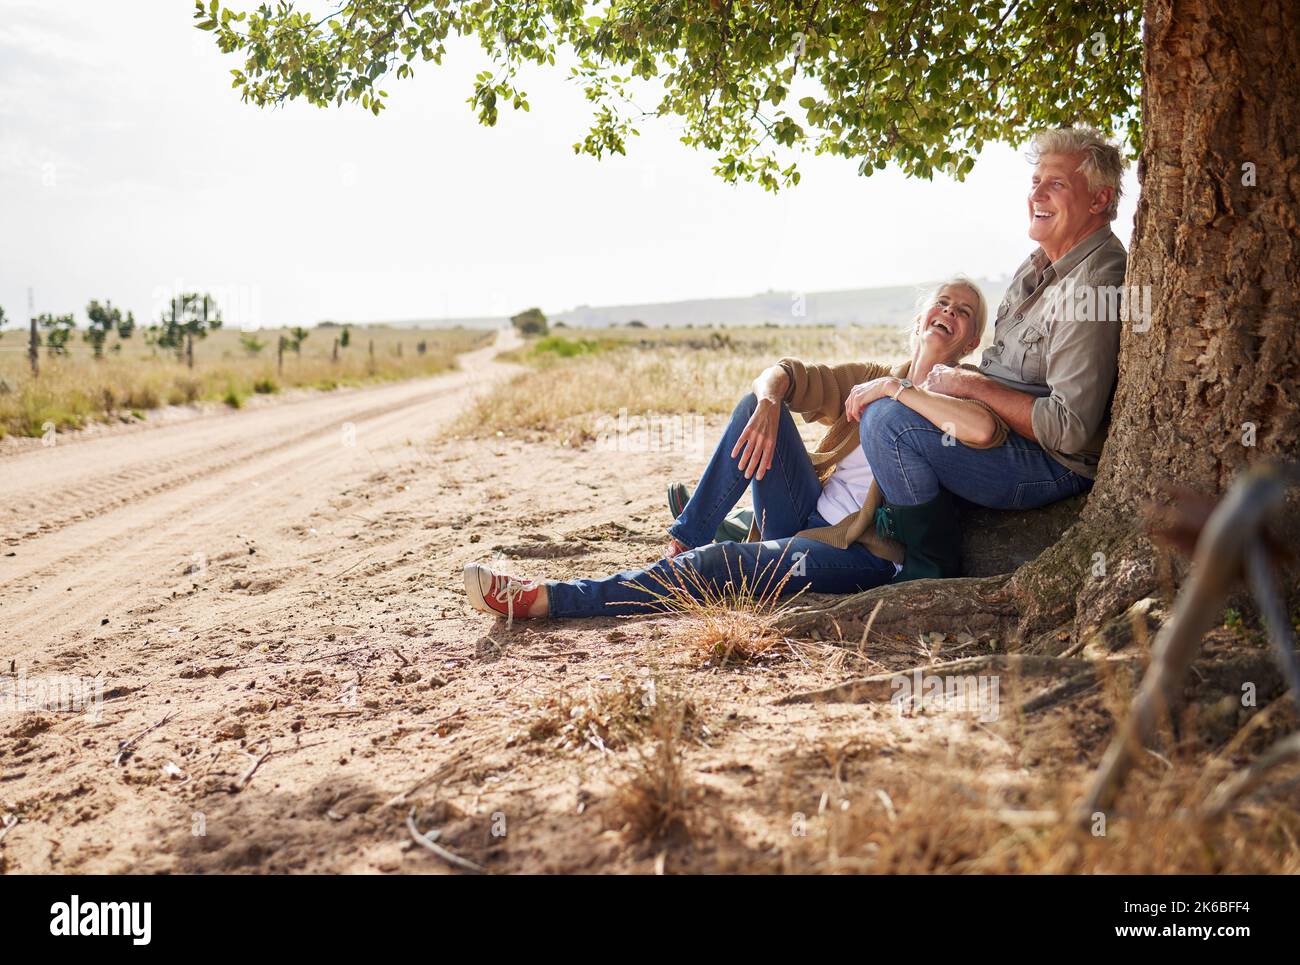 Dies ist das Leben, das wir wählen und lieben. Ein Seniorenpaar sitzt zusammen unter einem Baum. Stockfoto